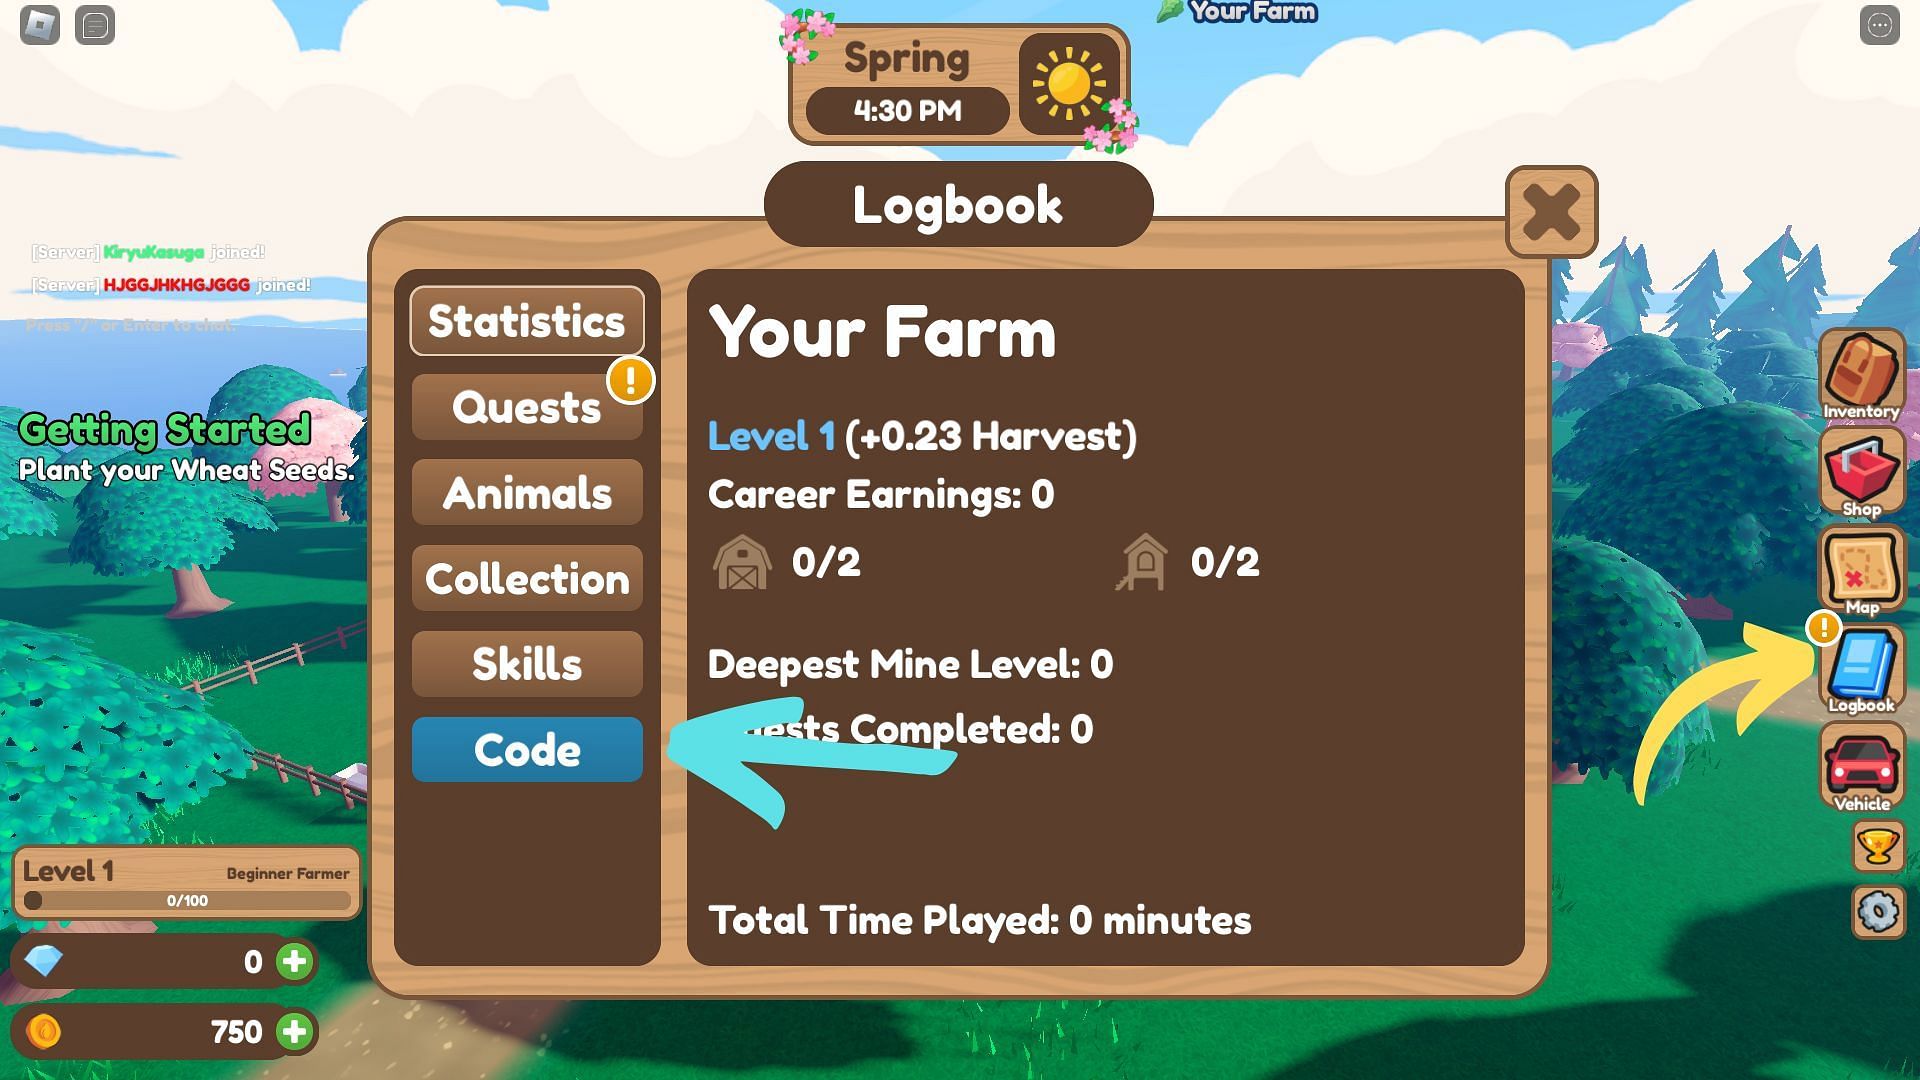 How to redeem codes for Farm Life Simulator (Image via Roblox)